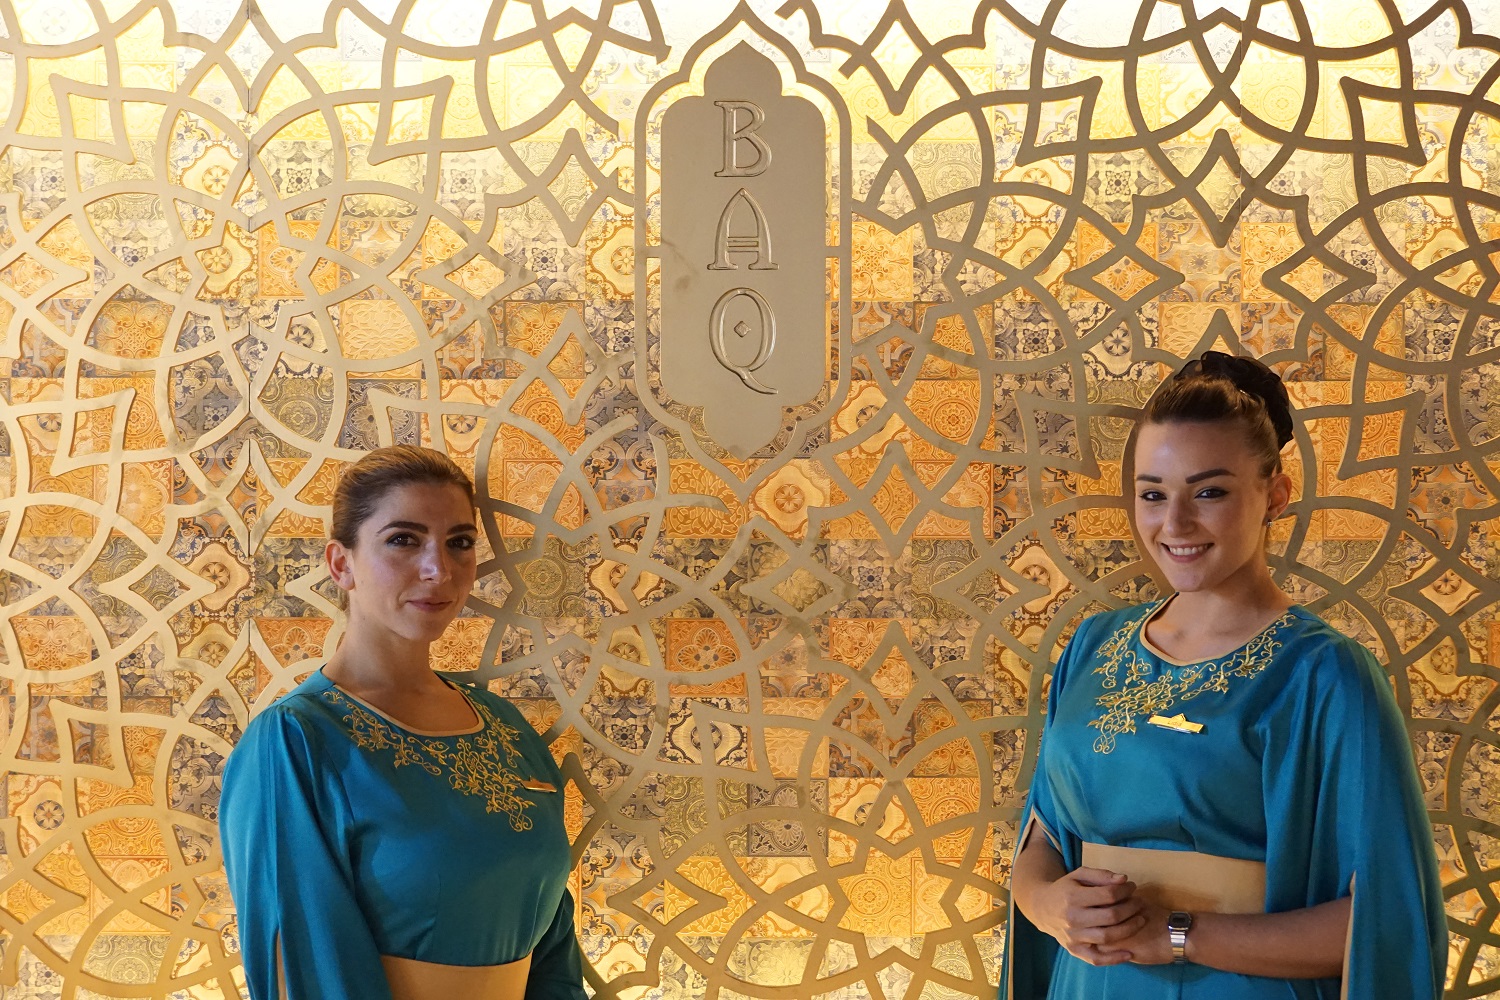 فندق باب القصر يحتفي بعراقة التقاليد العربية الأصيلة من خلال خيمته الرمضانية